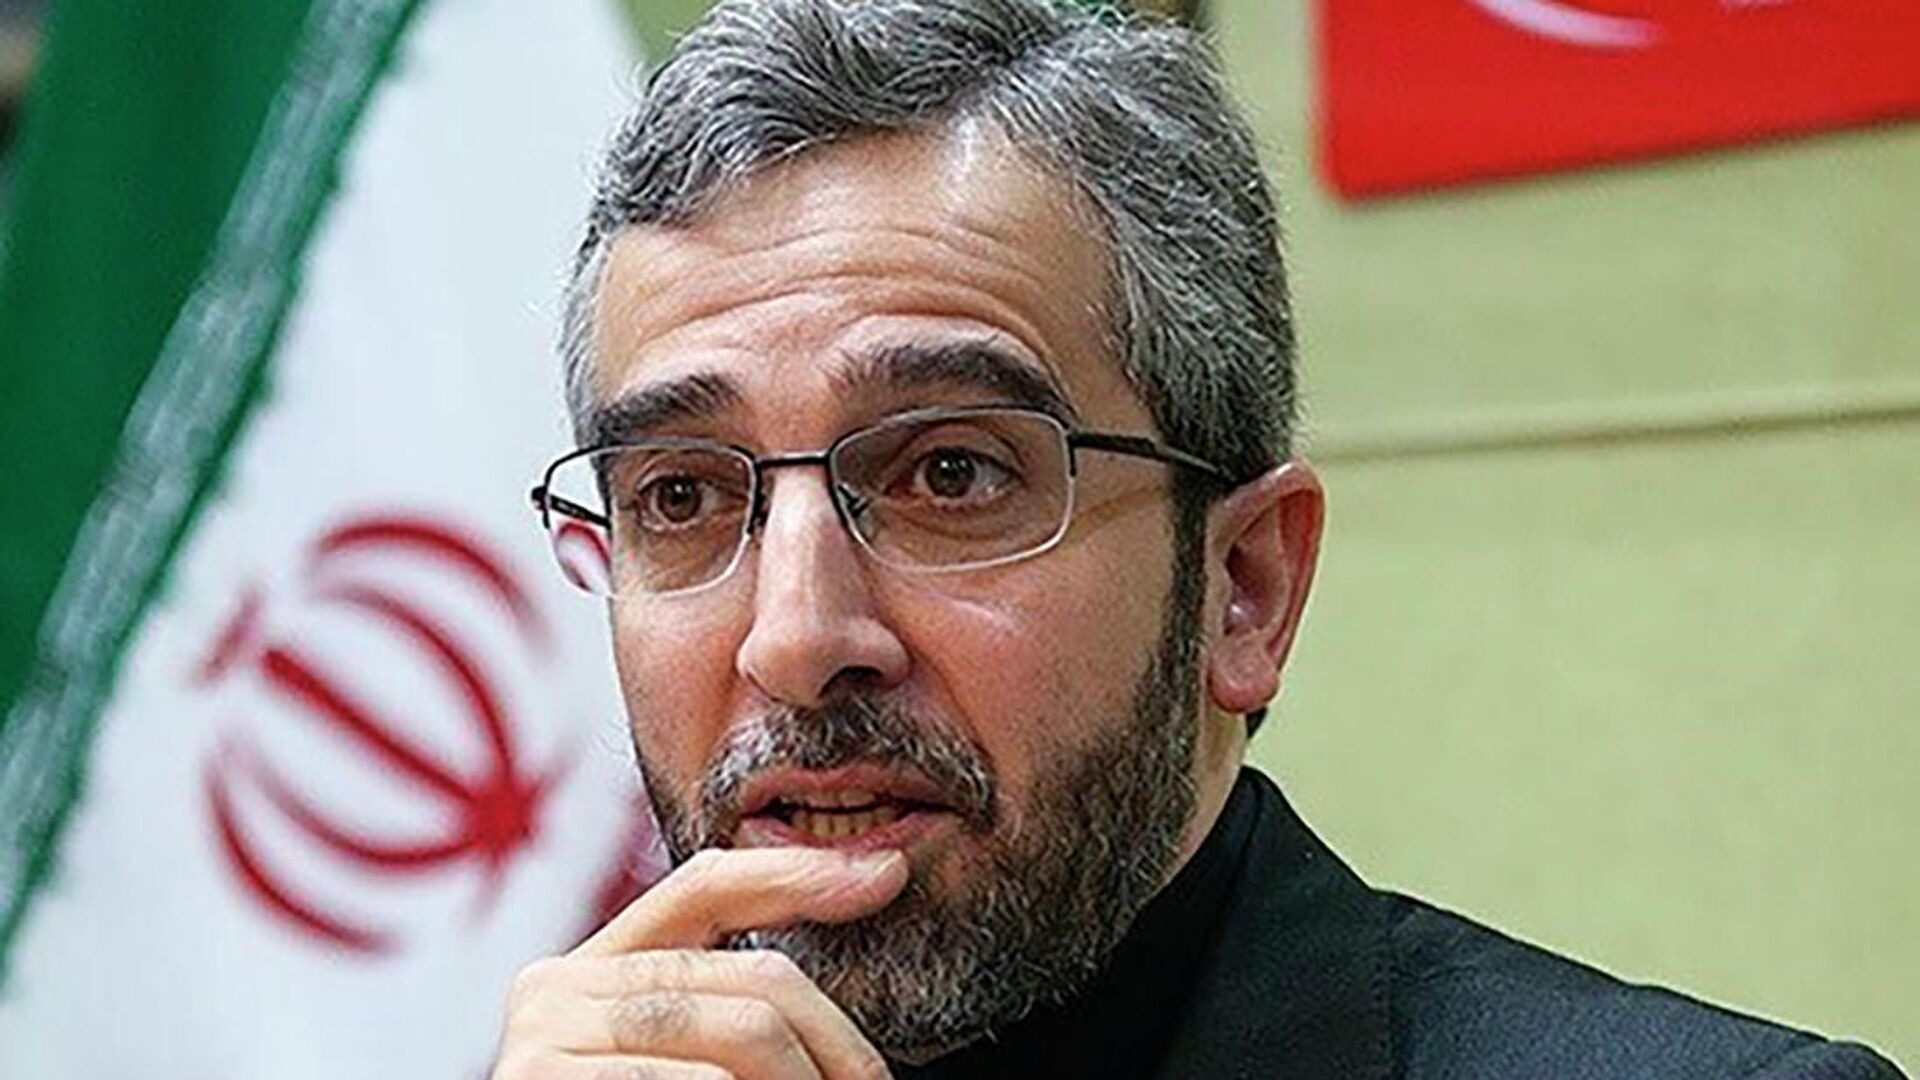 Новий глава МЗС Ірану дав перше інтерв’ю з розстебнутою ширинкою ➤ Prozoro.net.ua